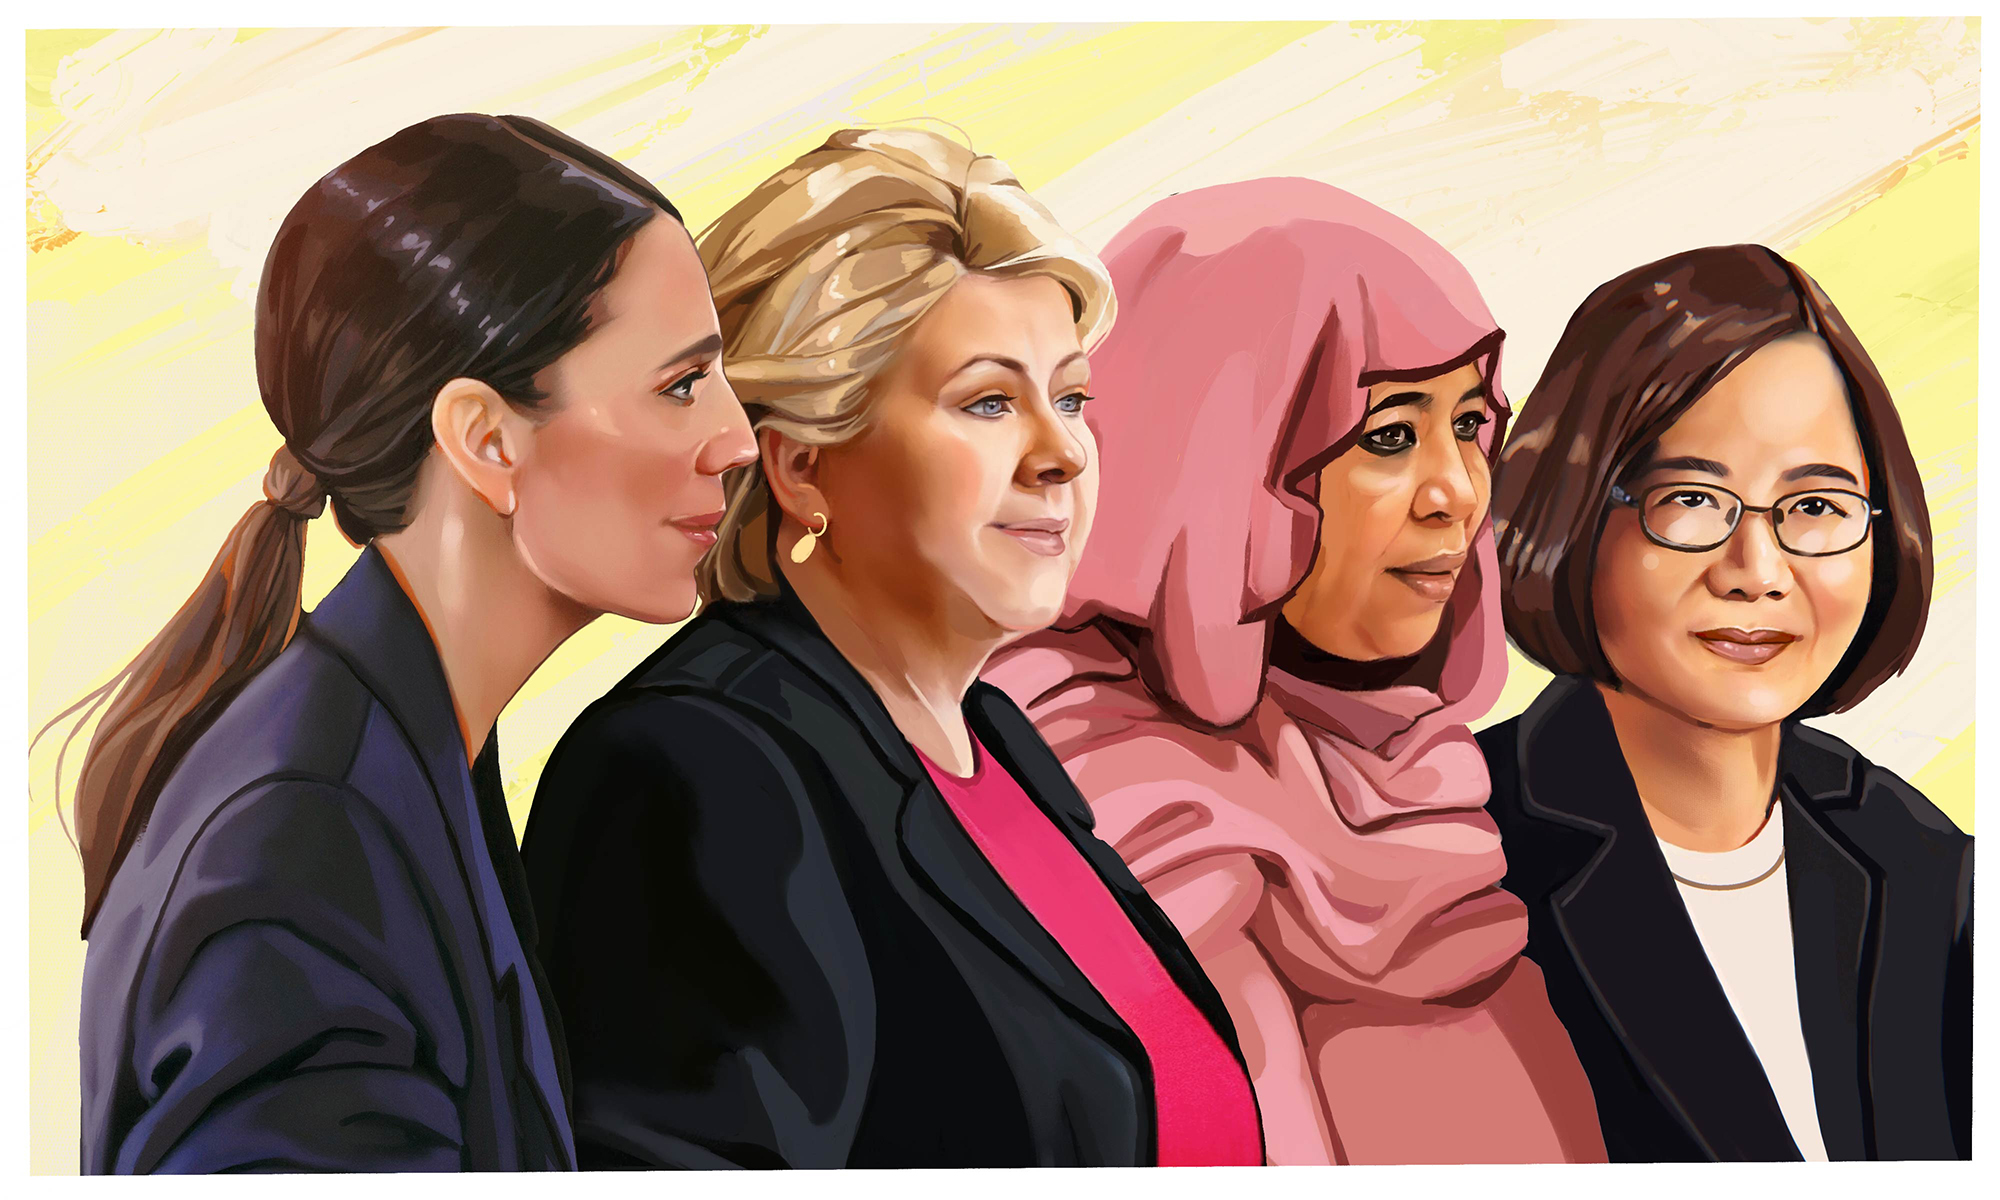 female leaders